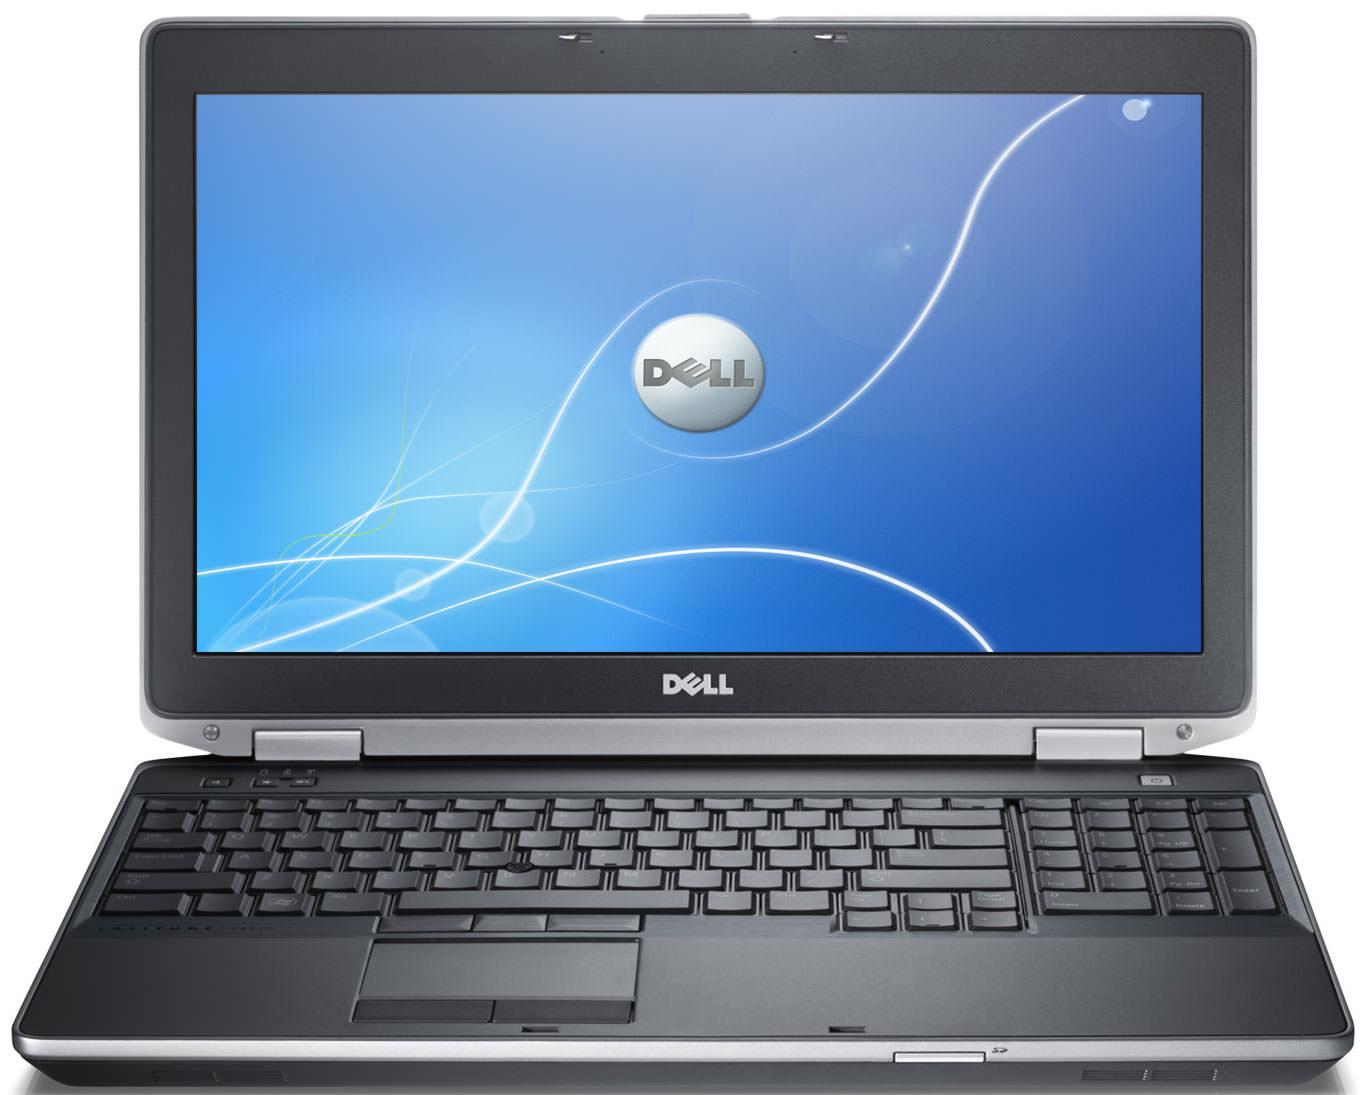 Dell Latitude E6530 Laptop (Core i5 2nd Gen/4 GB/500 GB/DOS/1) Price